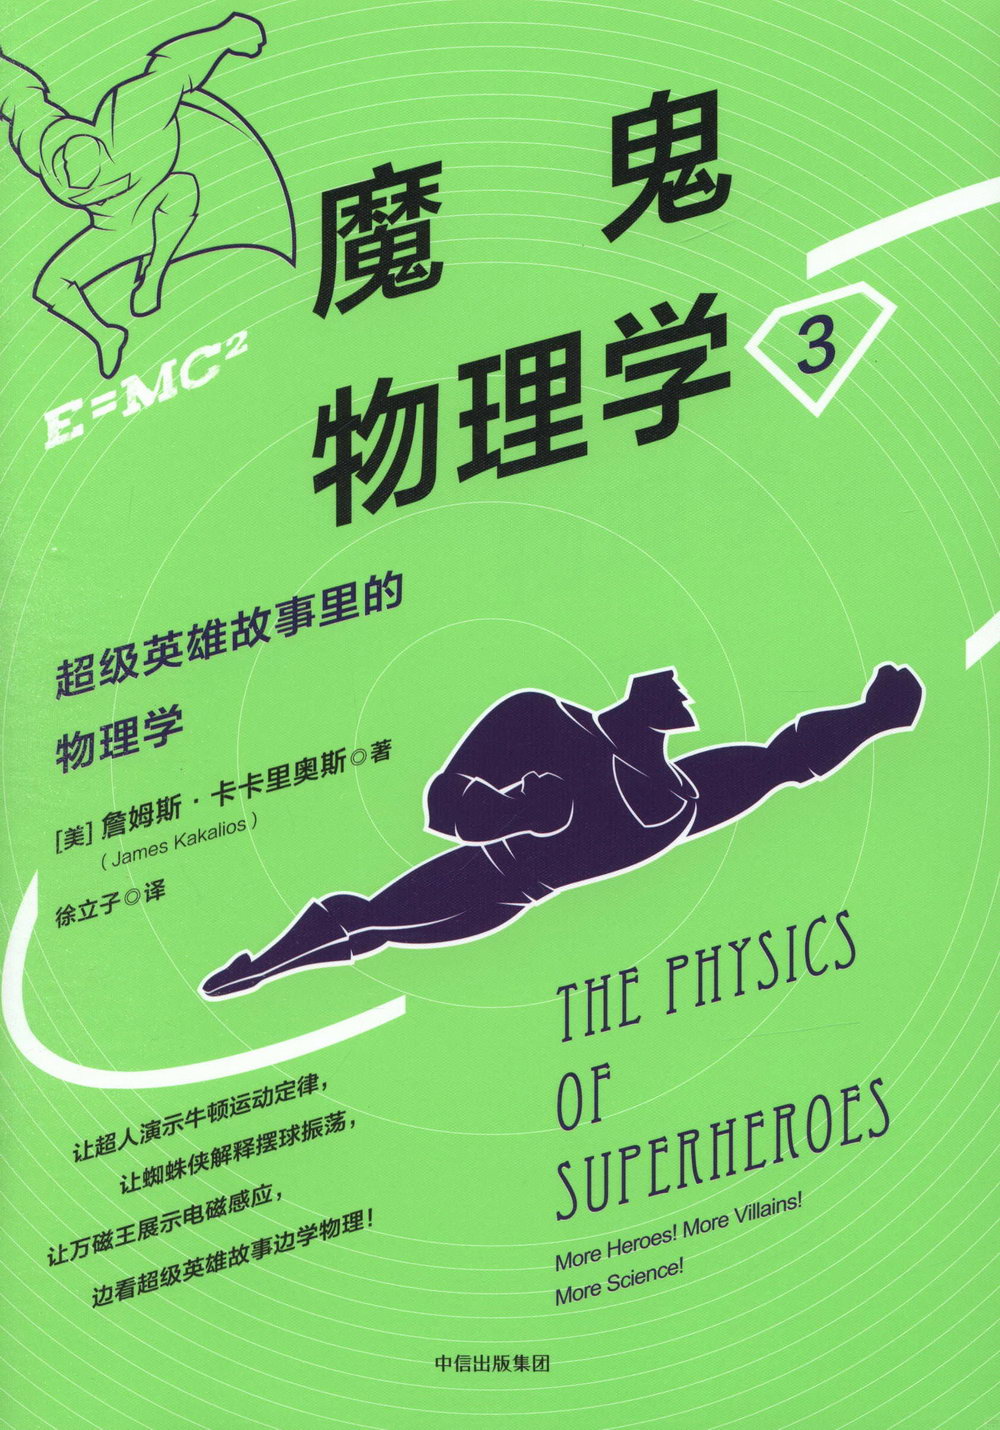 魔鬼物理學3：超級英雄故事里的物理學